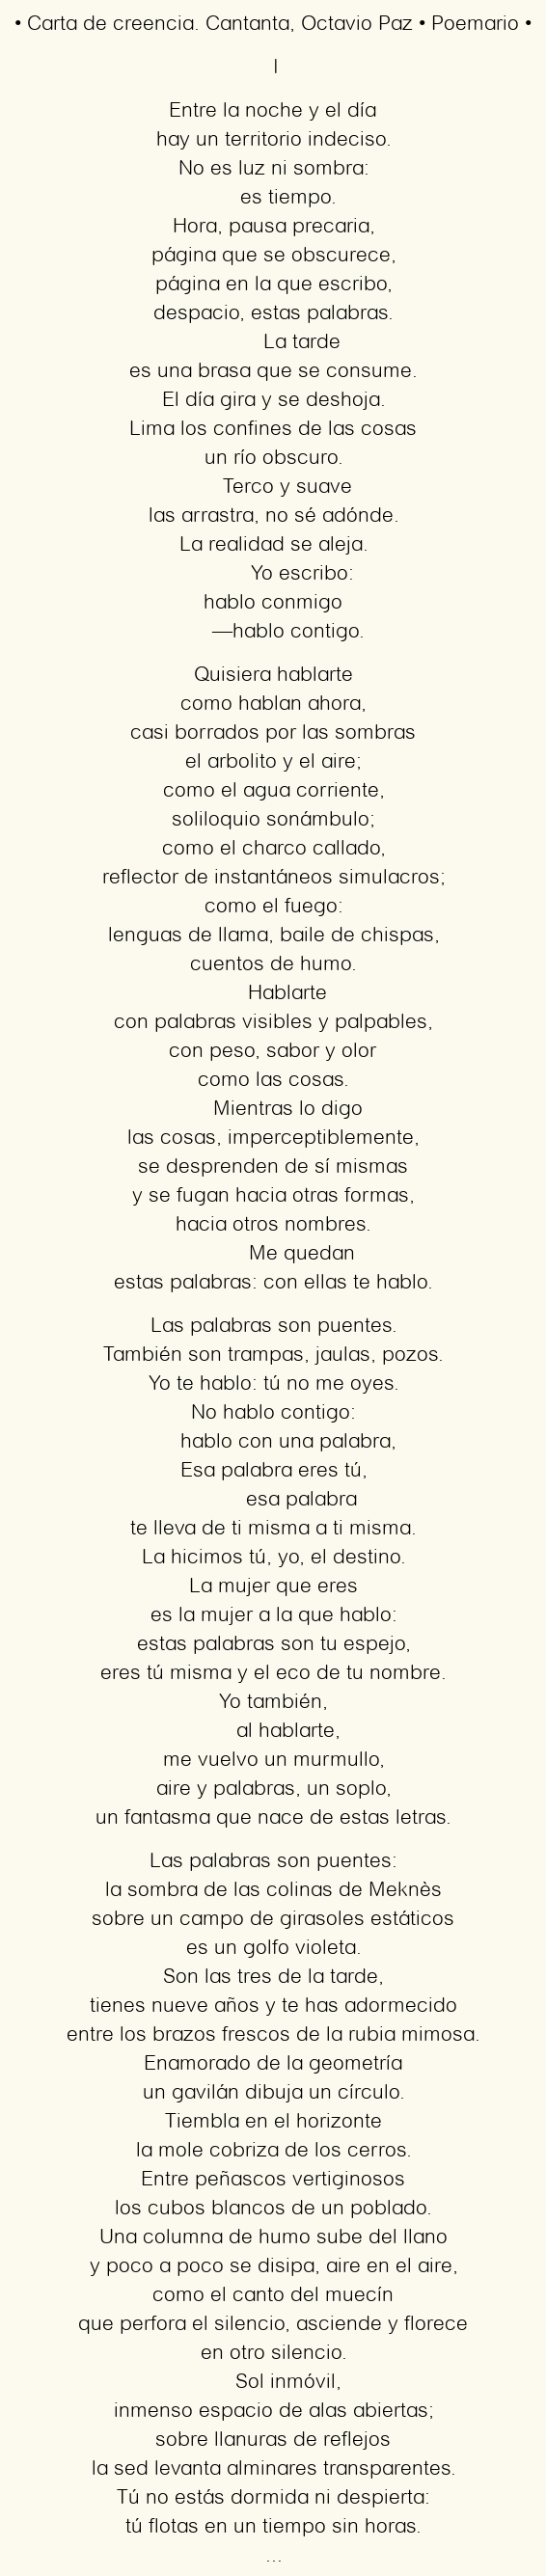 Imagen con el poema Carta de creencia. Cantanta, por Octavio Paz